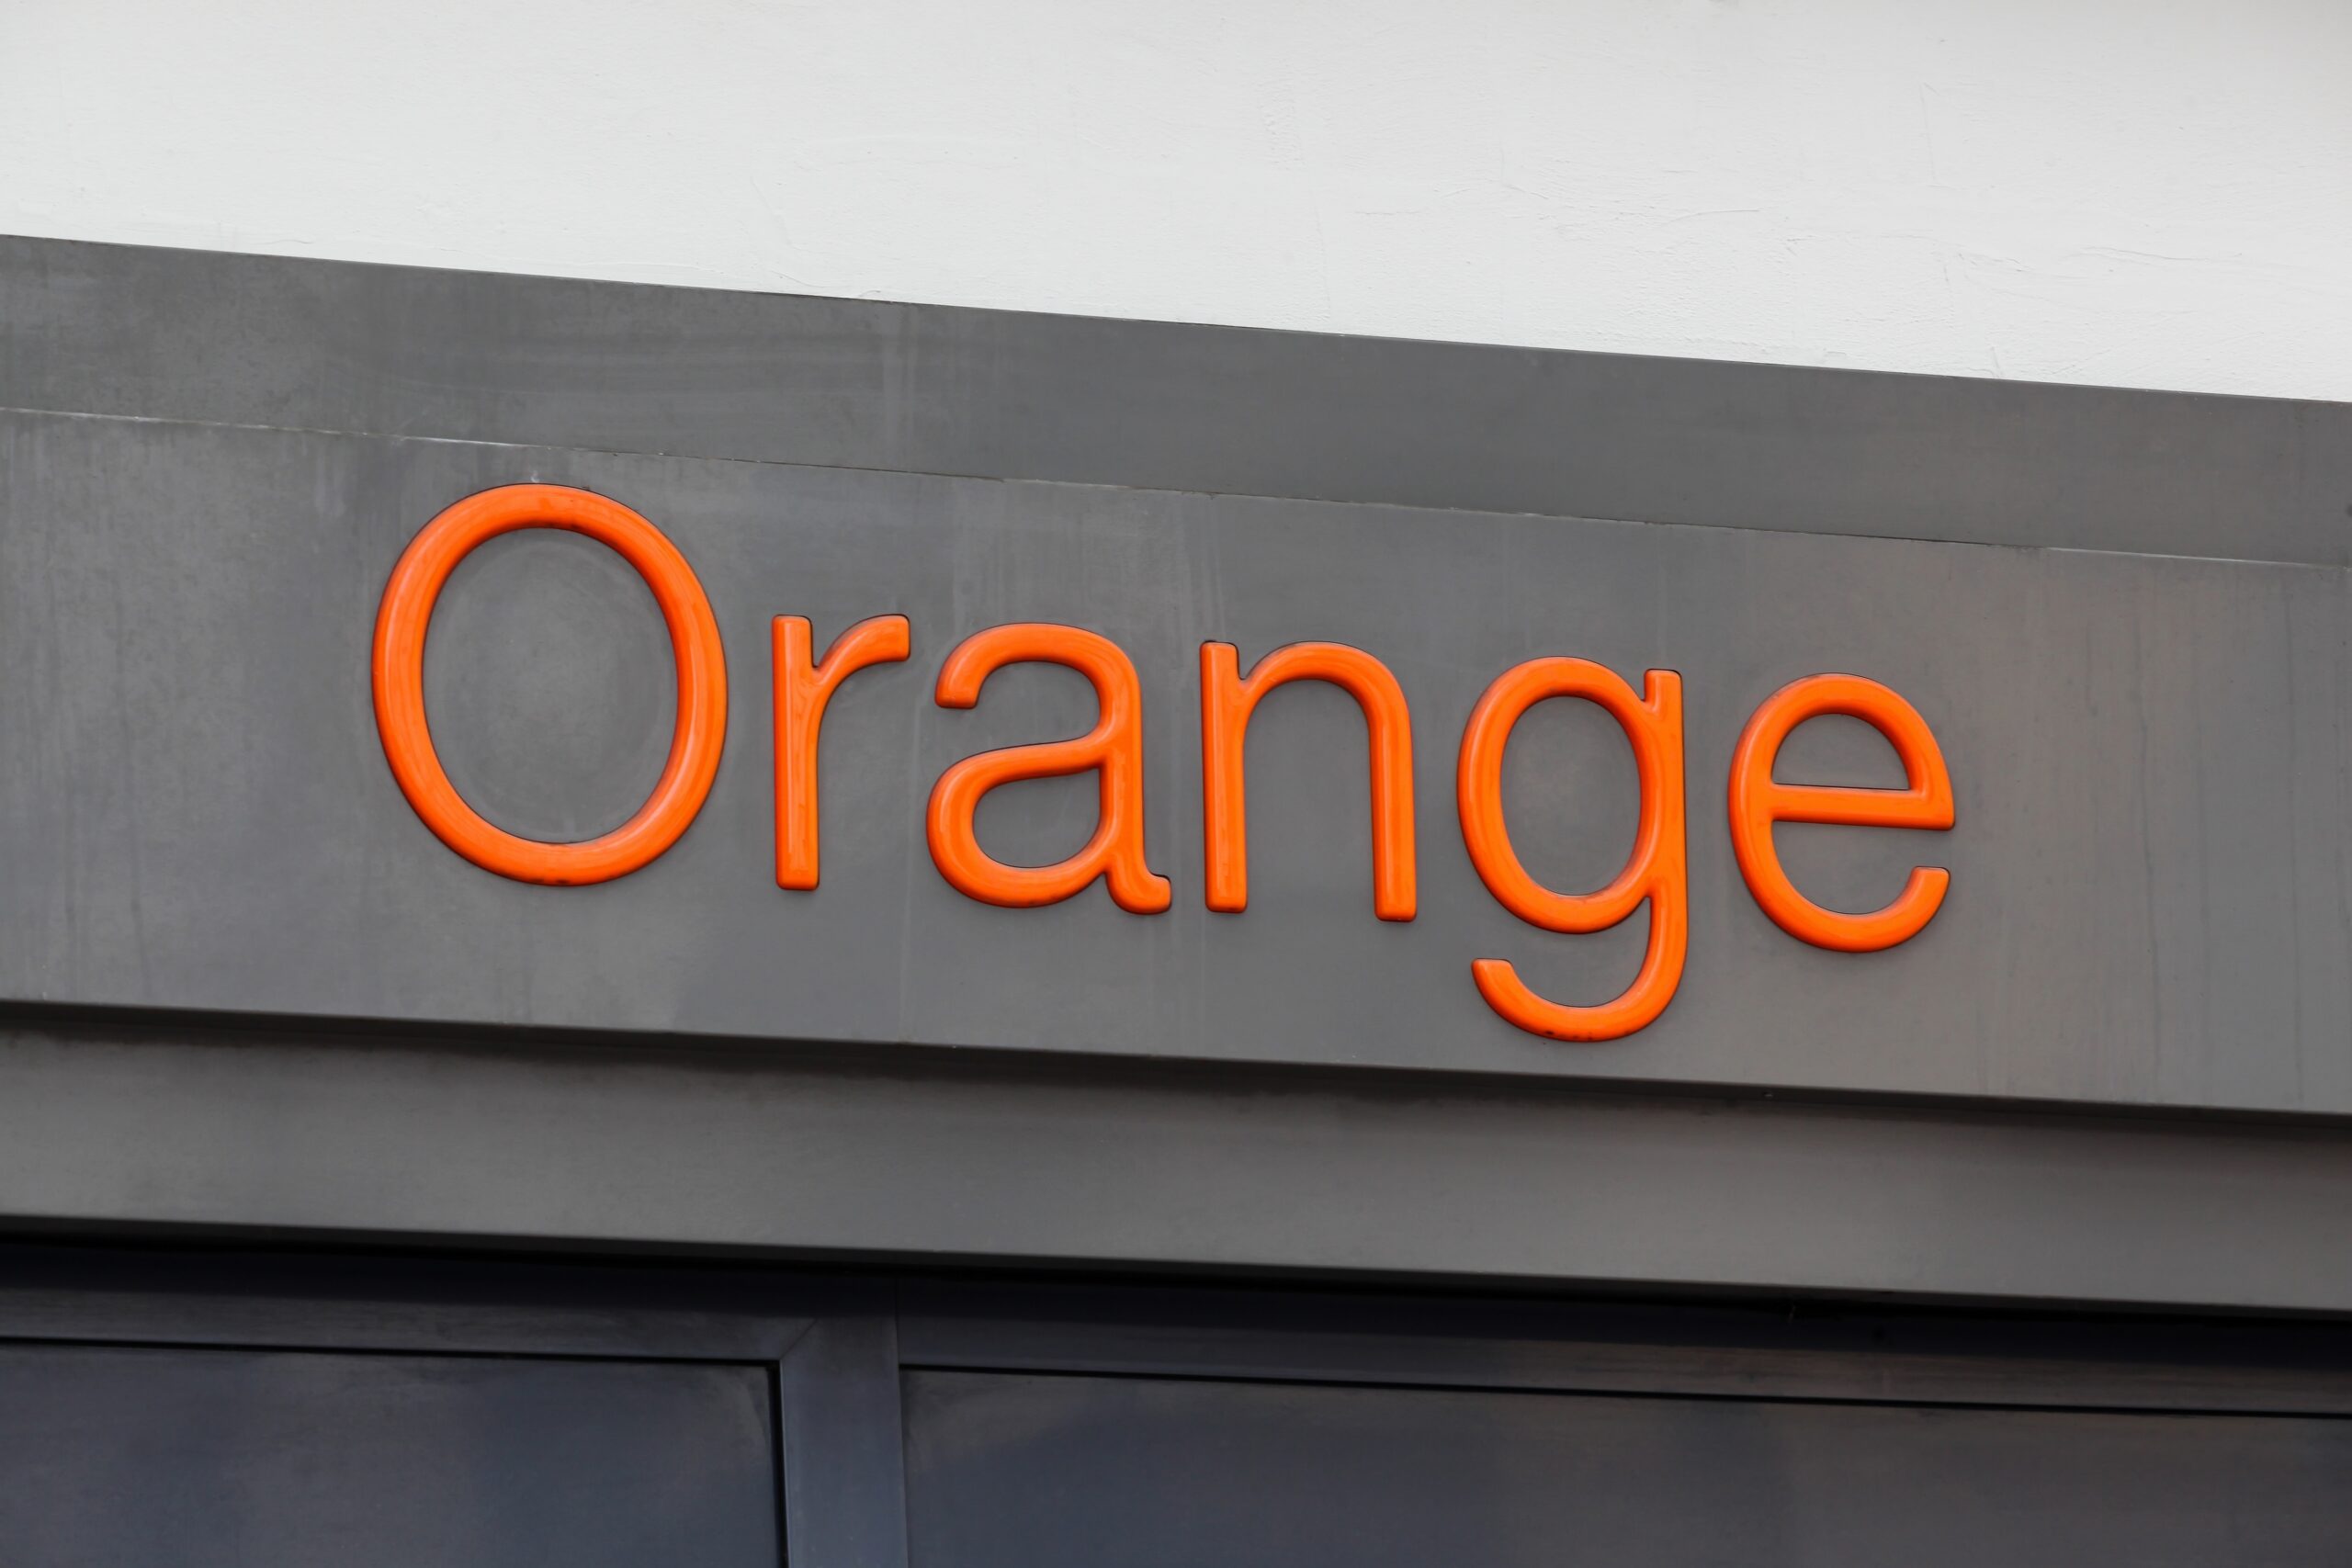 Pomarańczowy napis "Orange" na ciemnoszarym tle.